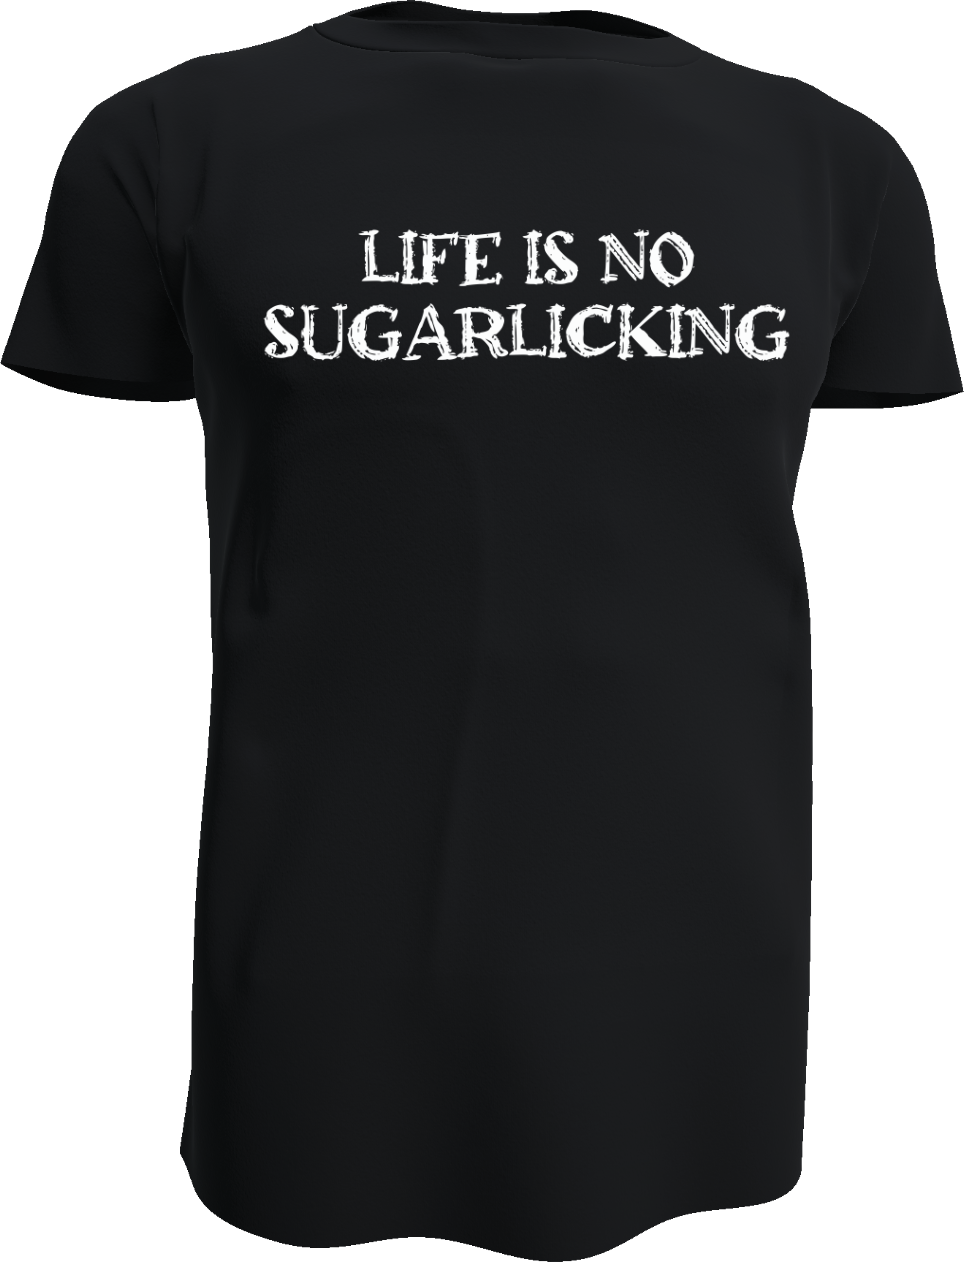 Life is no Sugarlicking - Shirt